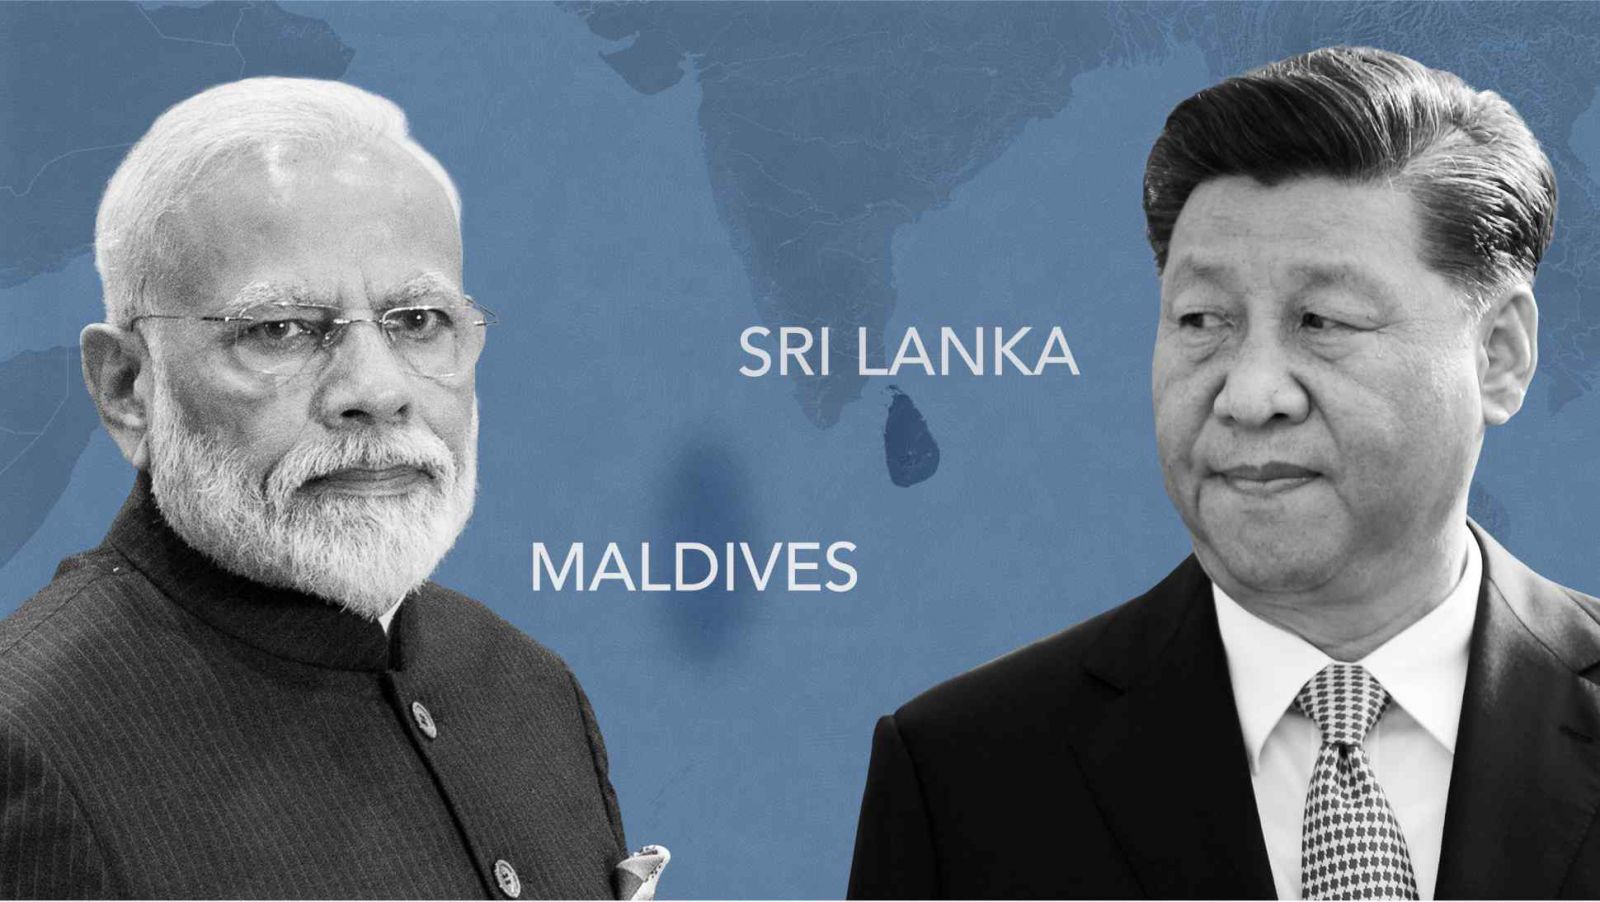 Ấn Độ và Trung Quốc nhìn thấy cơ hội tăng cường ảnh hưởng địa chính trị của họ ở Sri Lanka và Malpes, cả hai đều có vị trí chiến lược ở Ấn Độ Dương